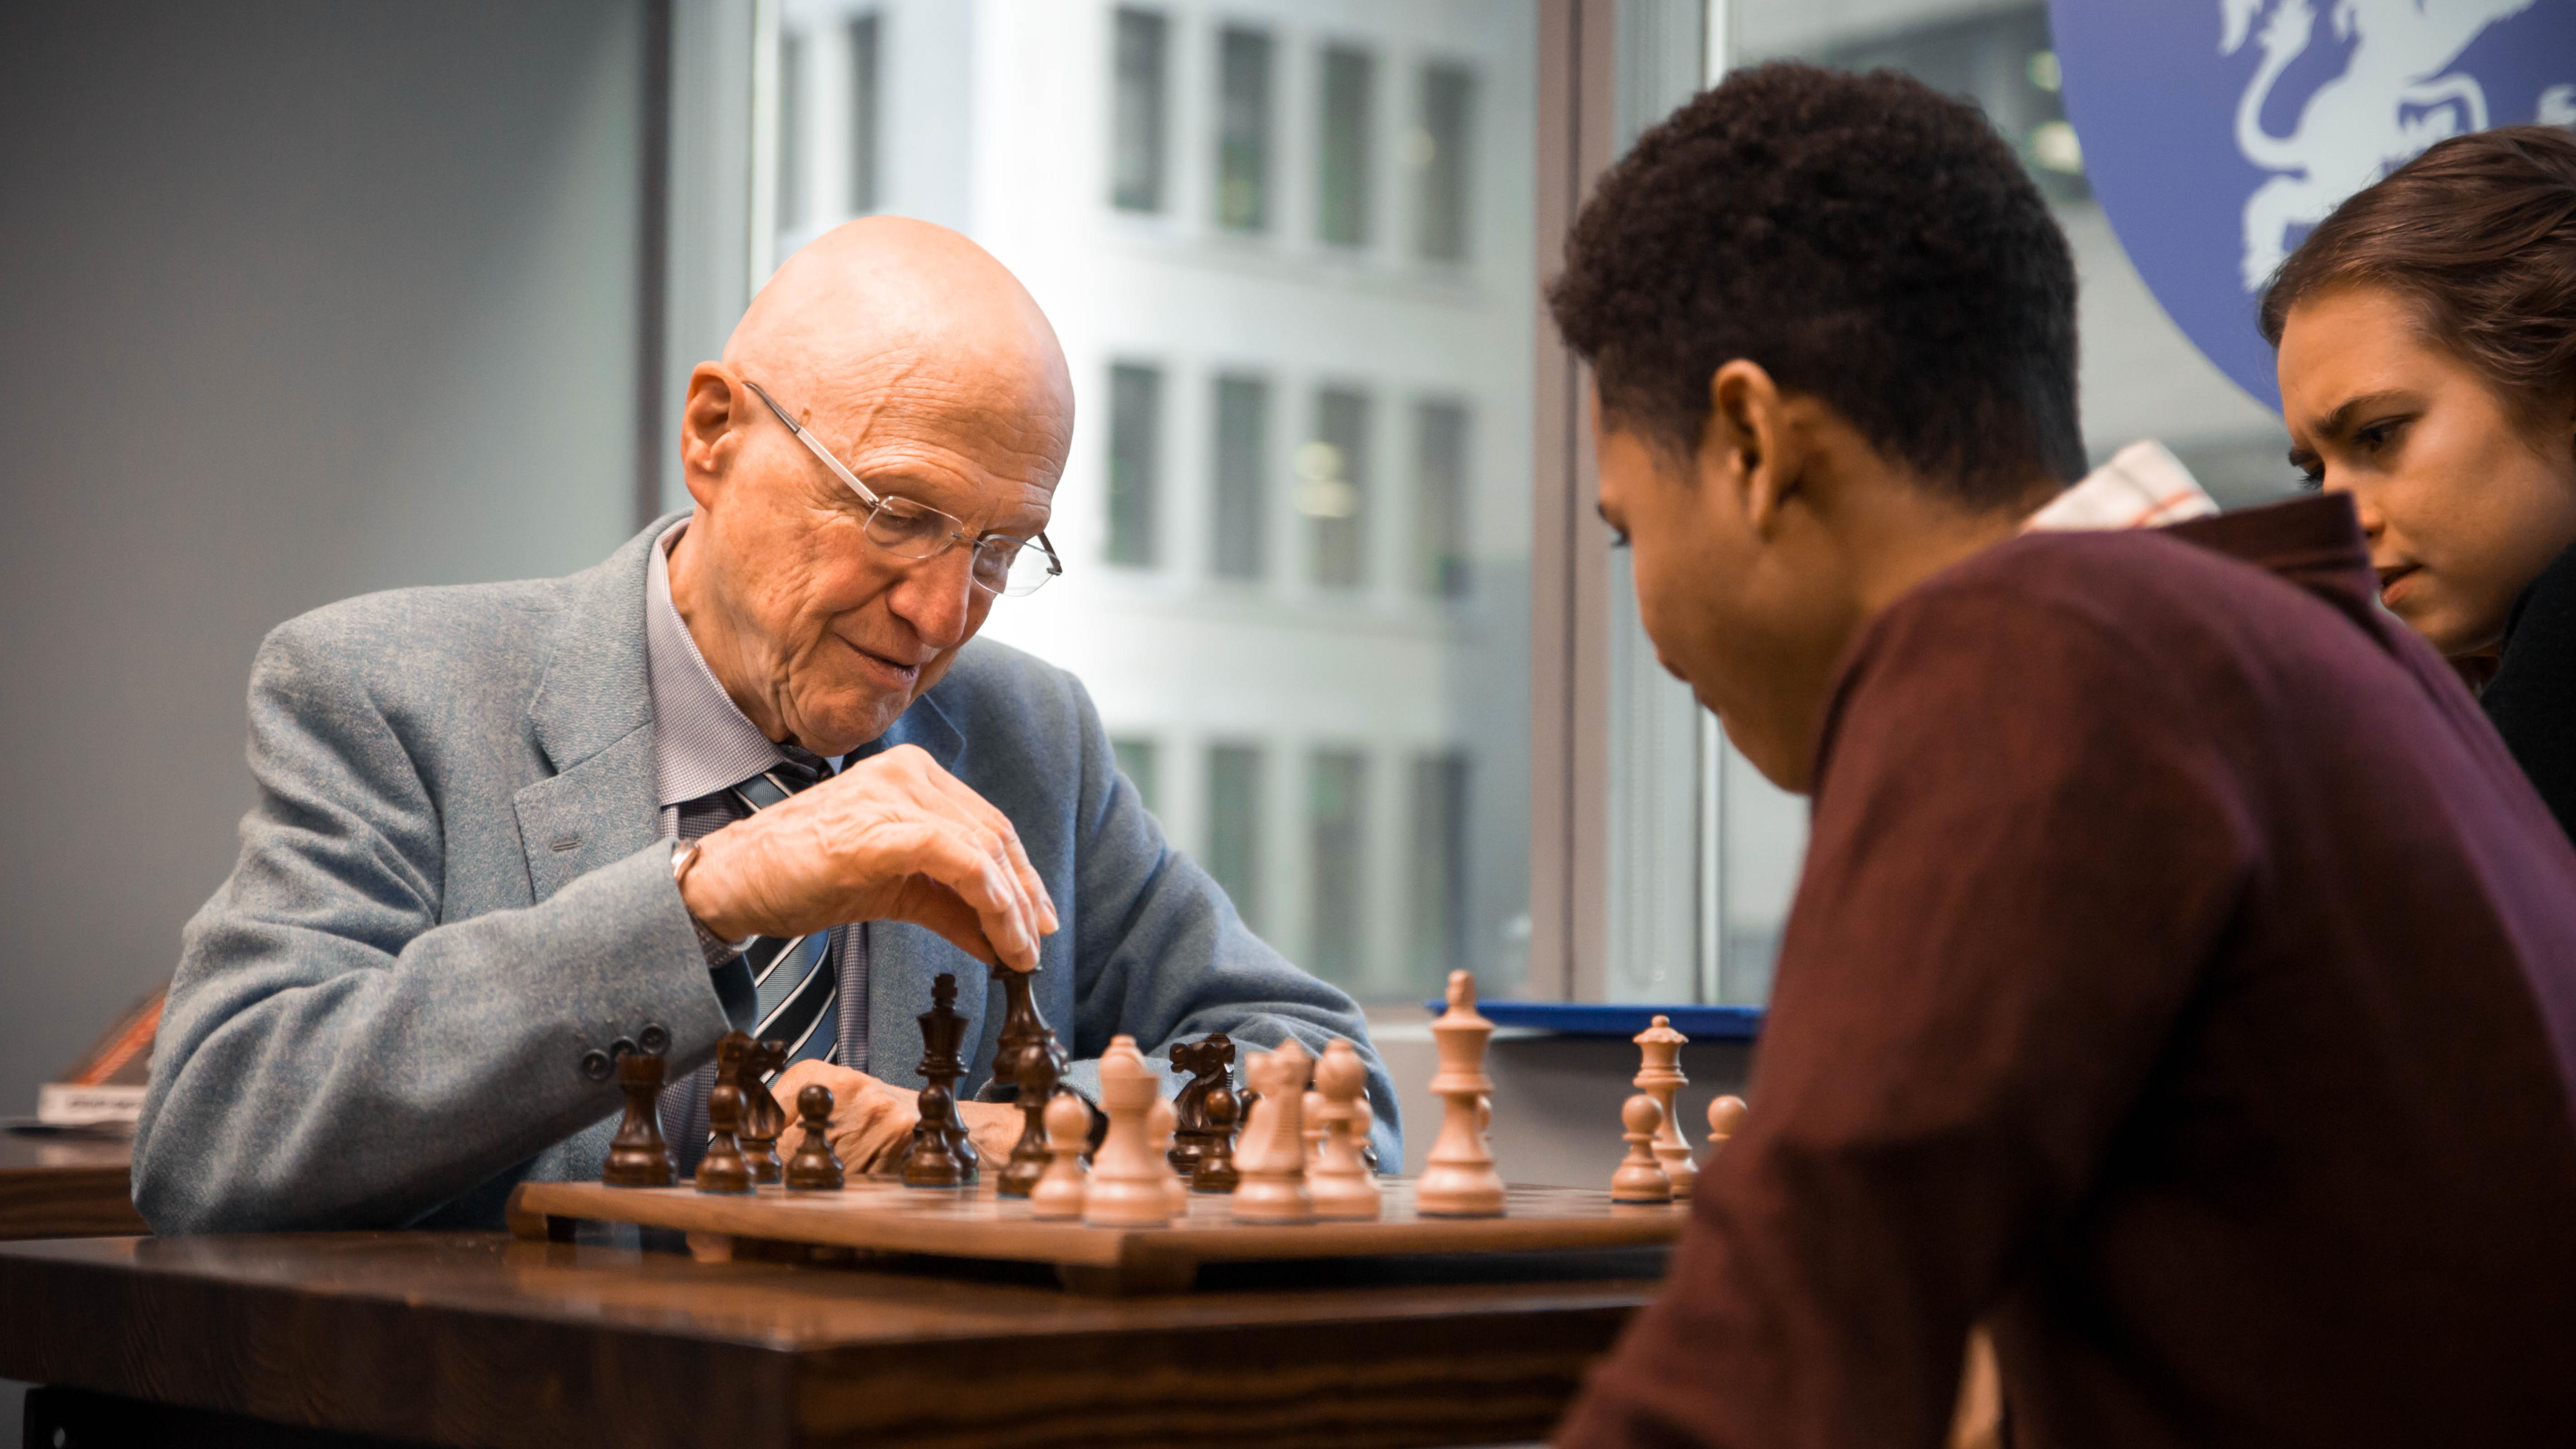 Dr. 克雷夫特和学生下棋